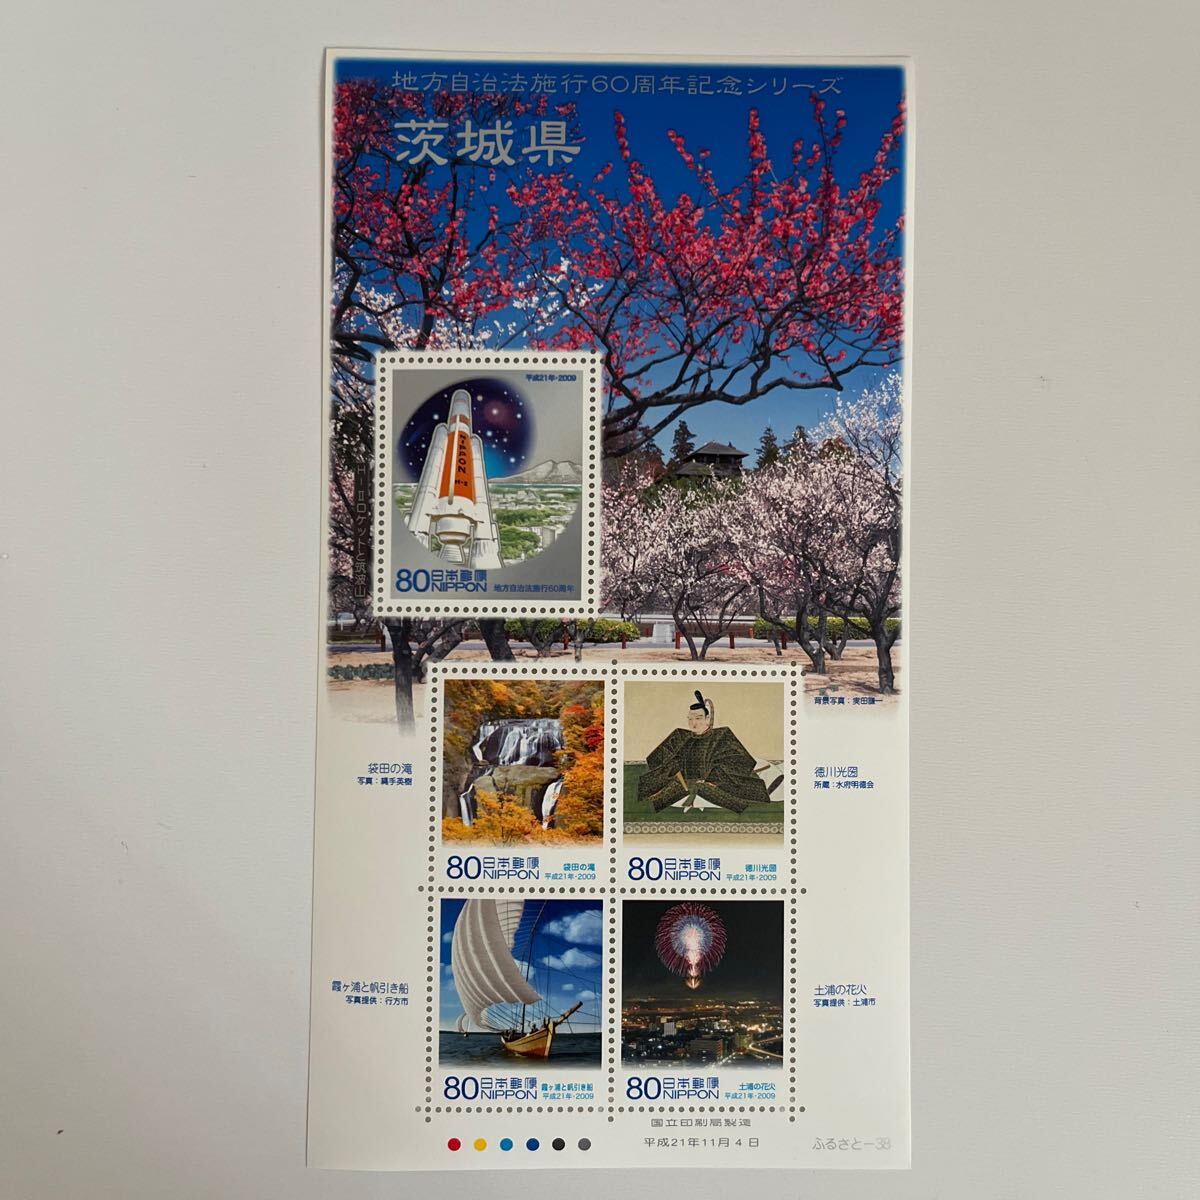 《送料込み》地方自治法施行60周年記念シリーズ 【茨城県】 ふるさと切手 ふるさと-38の画像2